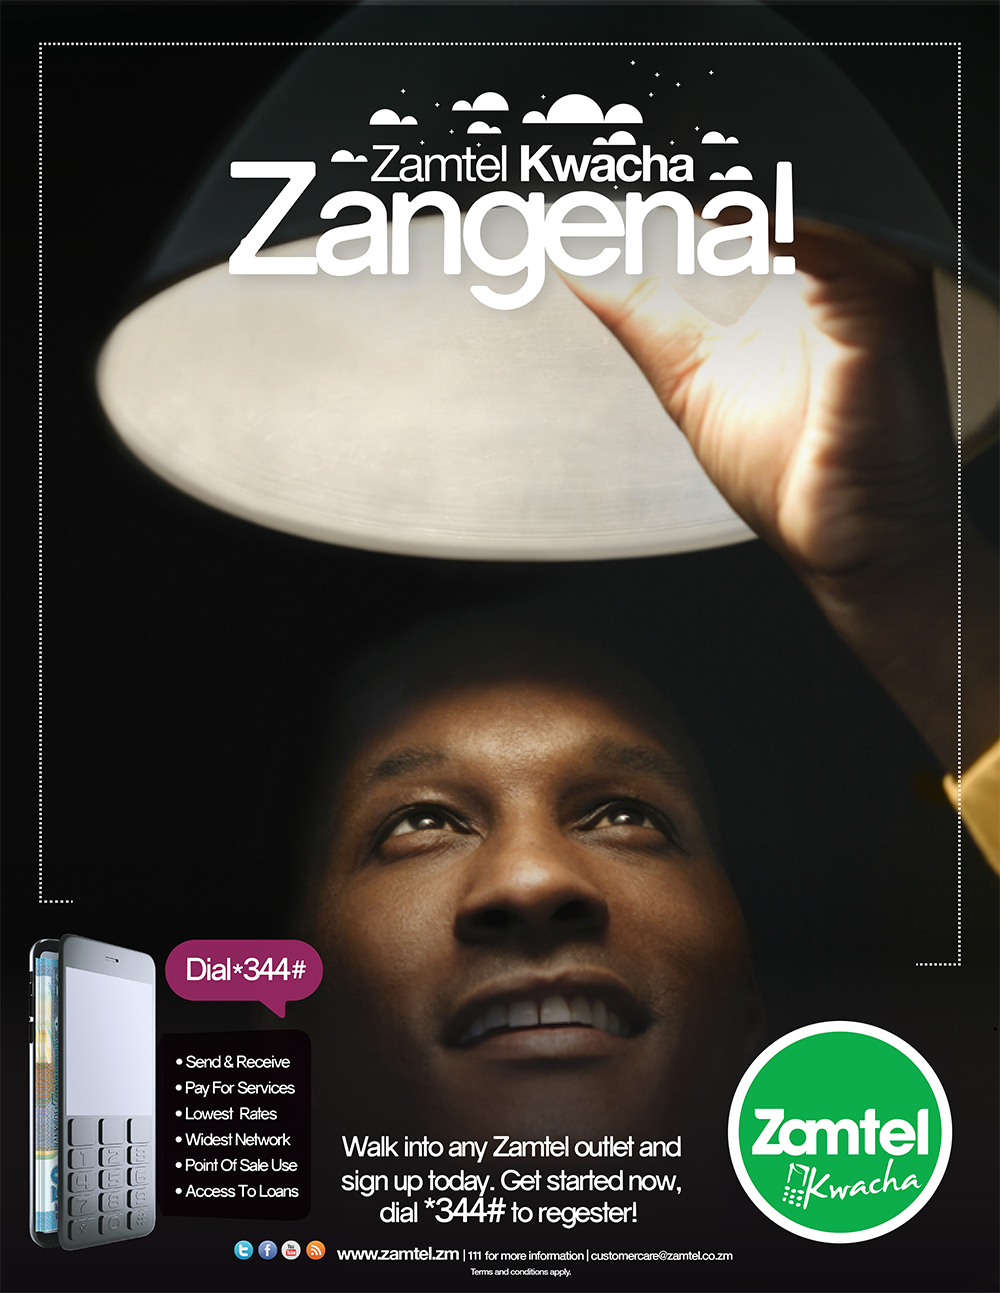 Advertising  mobile money Telecommunication Zamtel Lusaka Zambia tv Radio campaign zangena